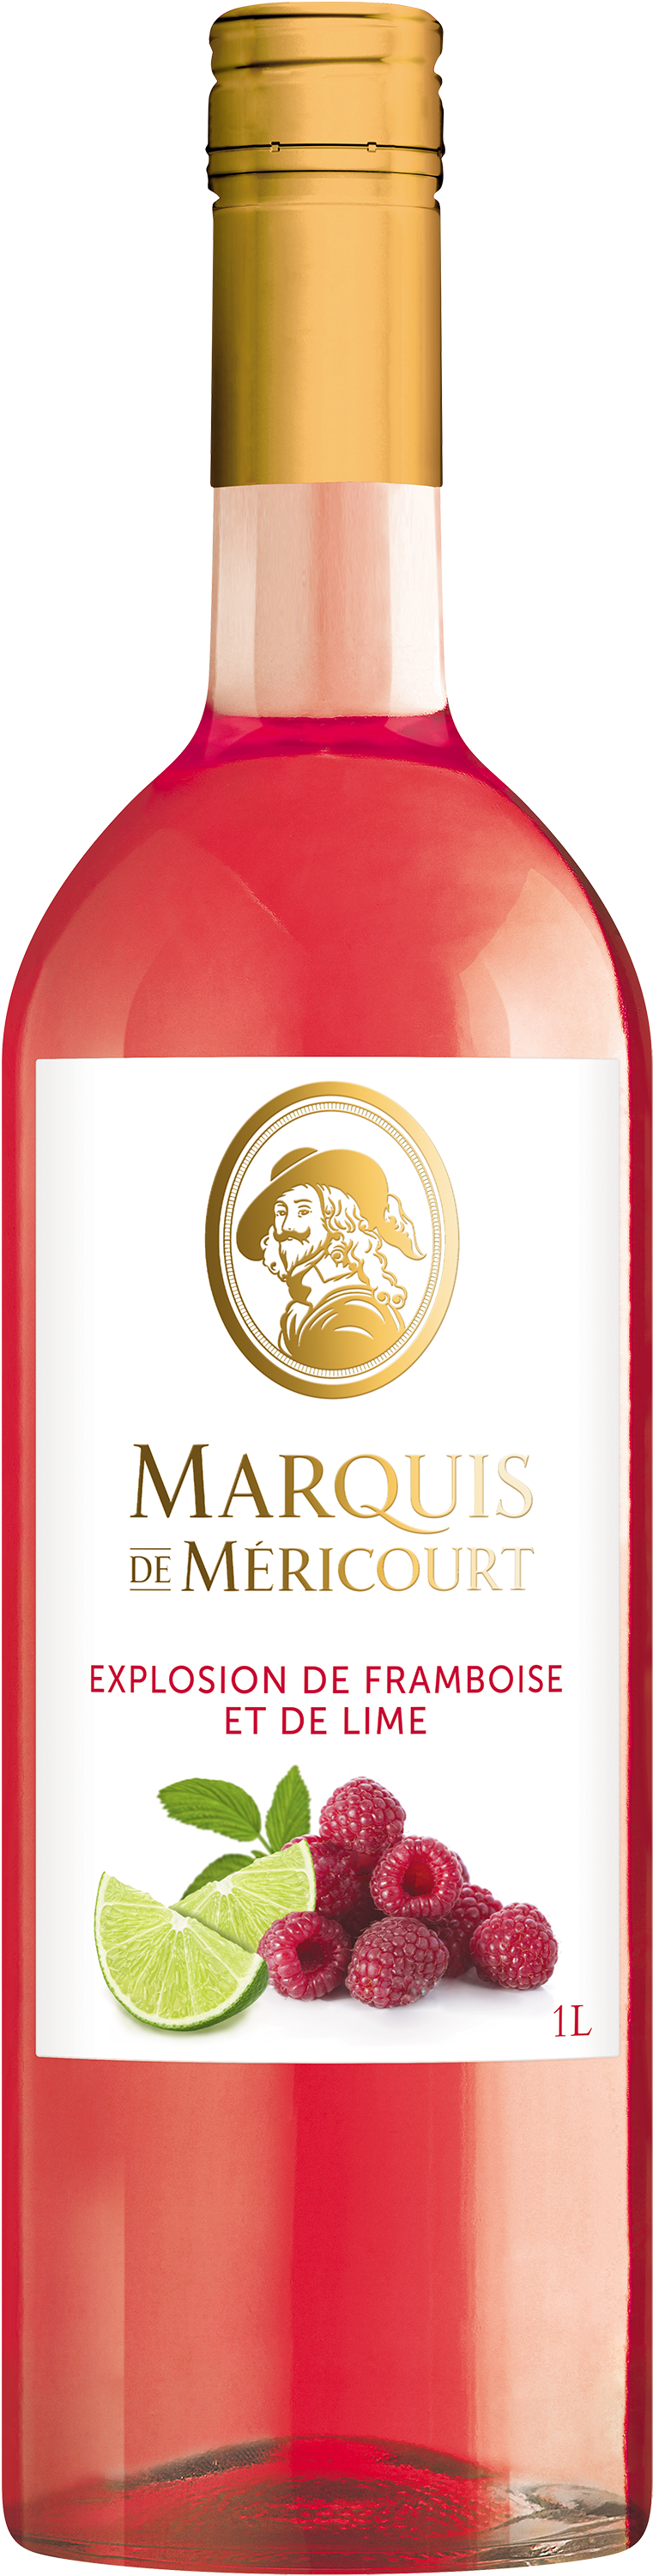 Marquis de Méricourt Explosion de framboise